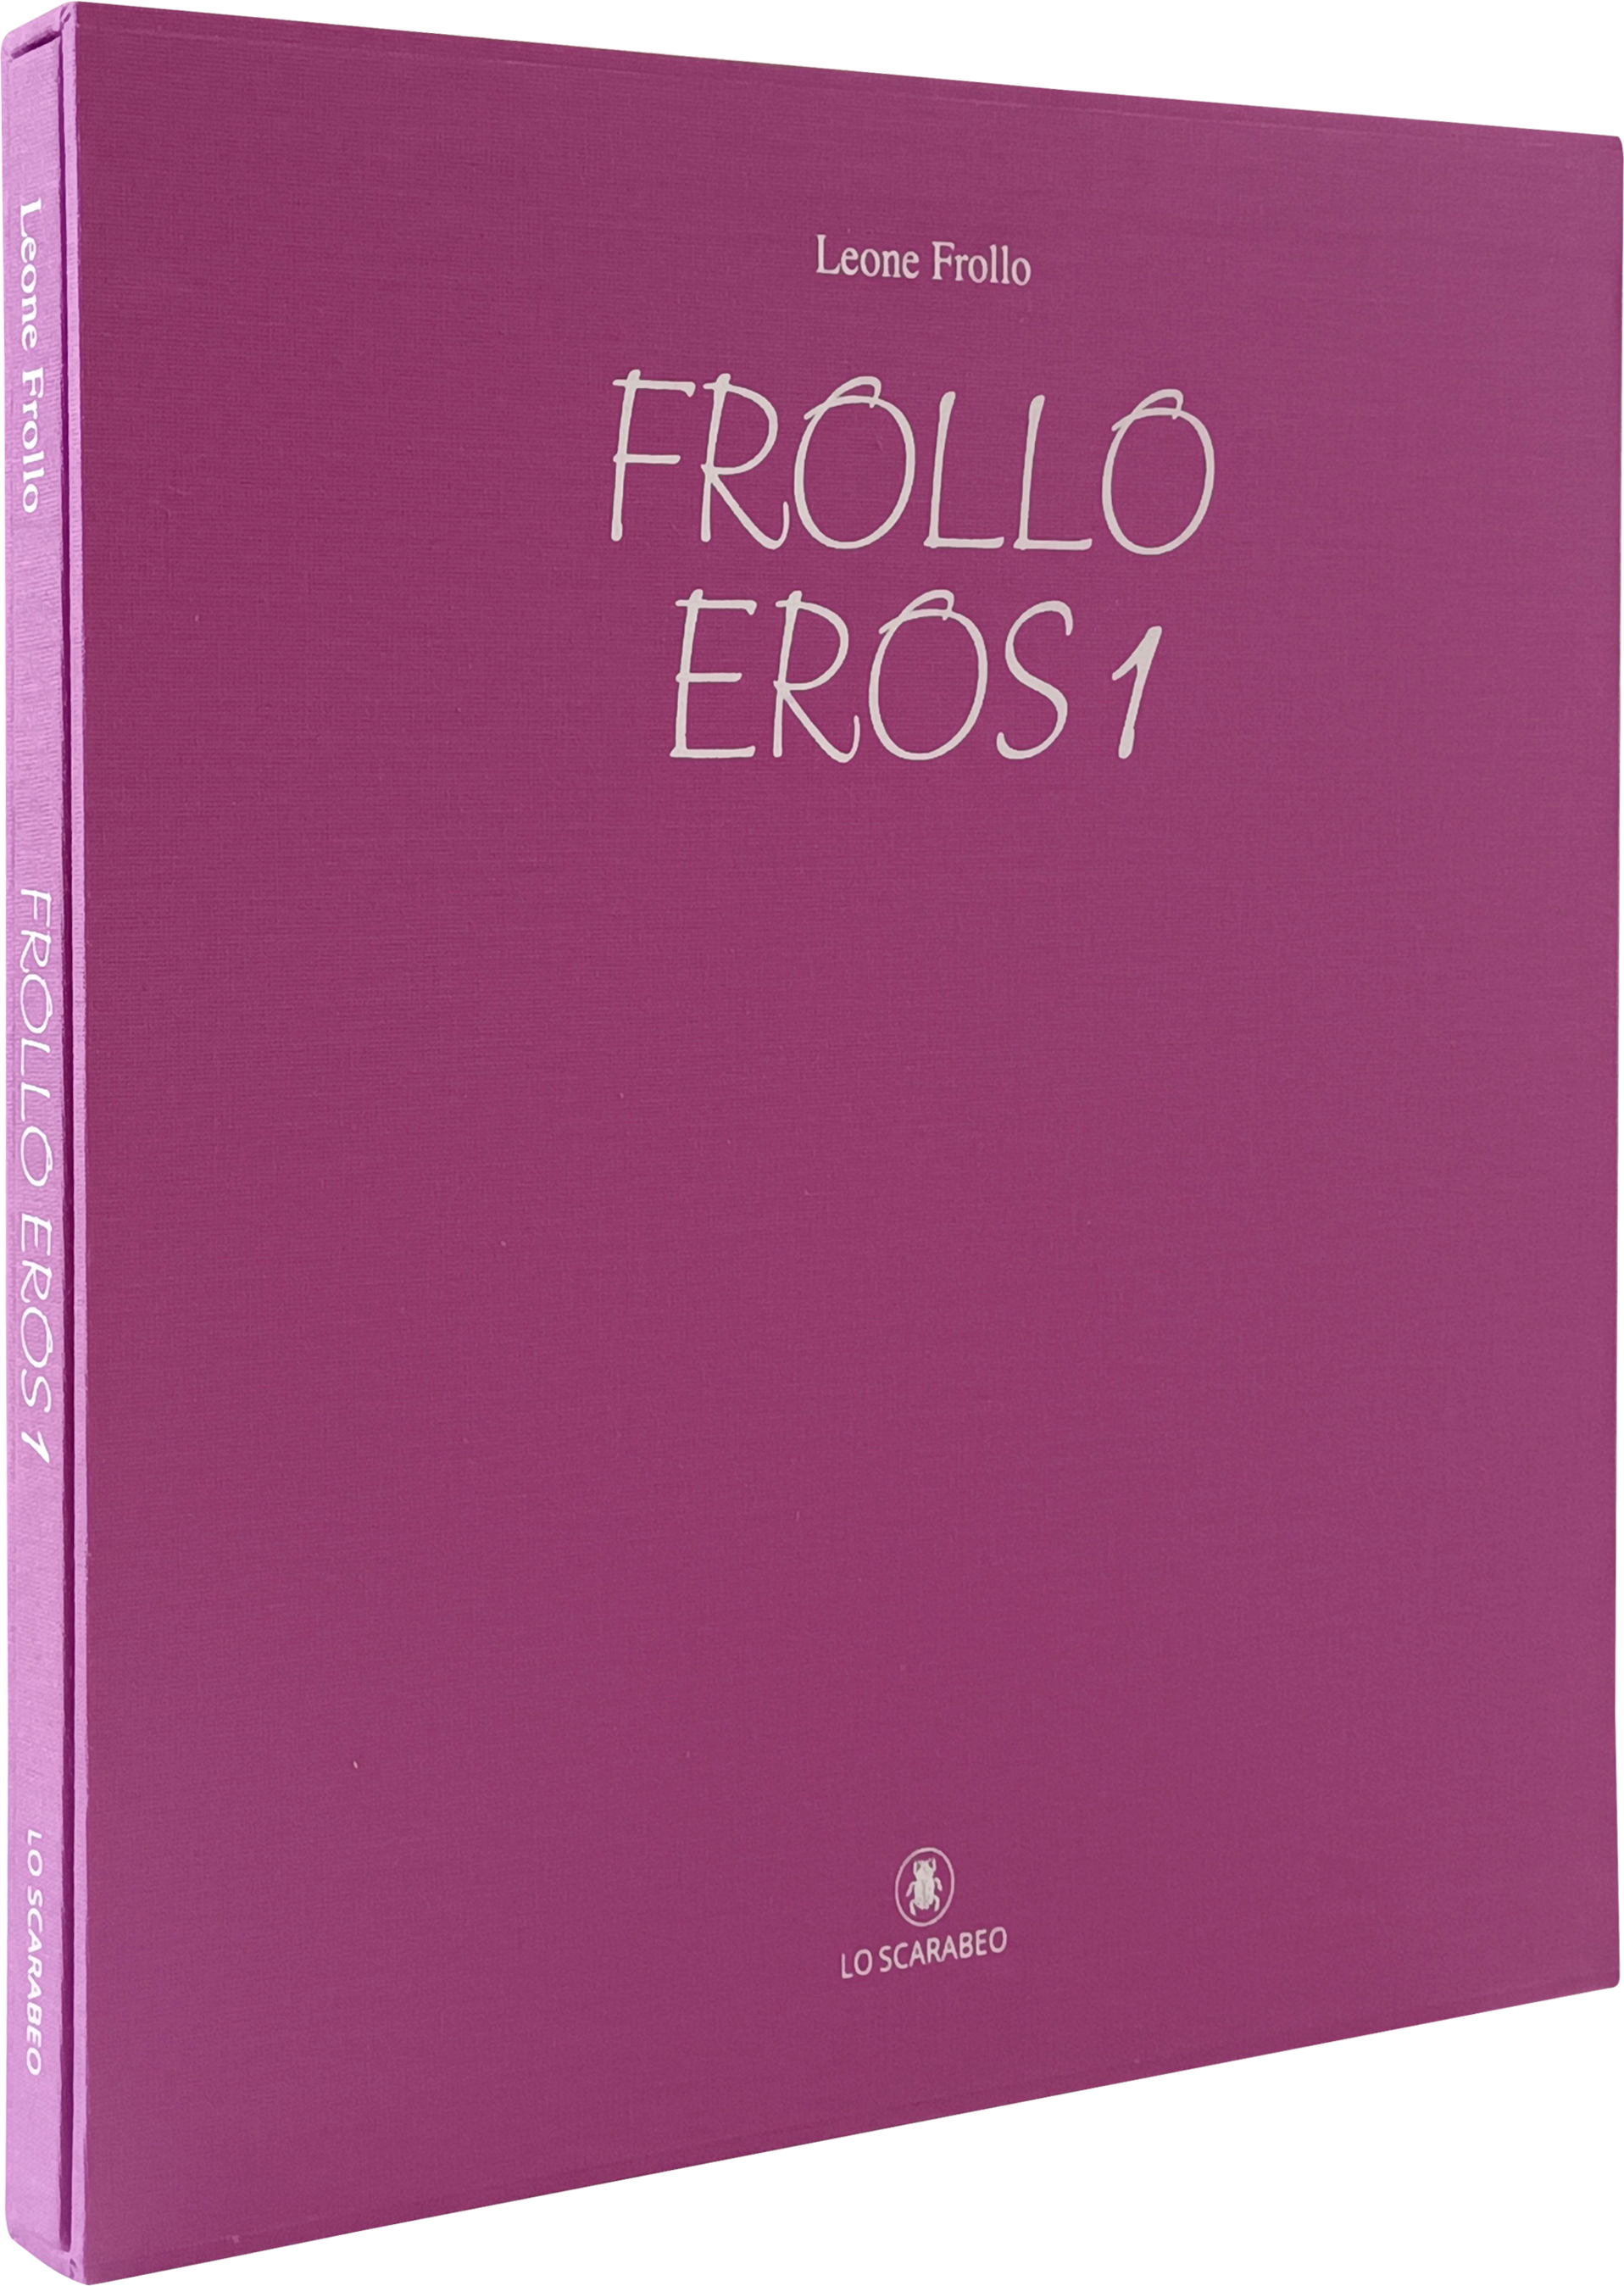 Frollo - Eros 1 - Deluxe Edition